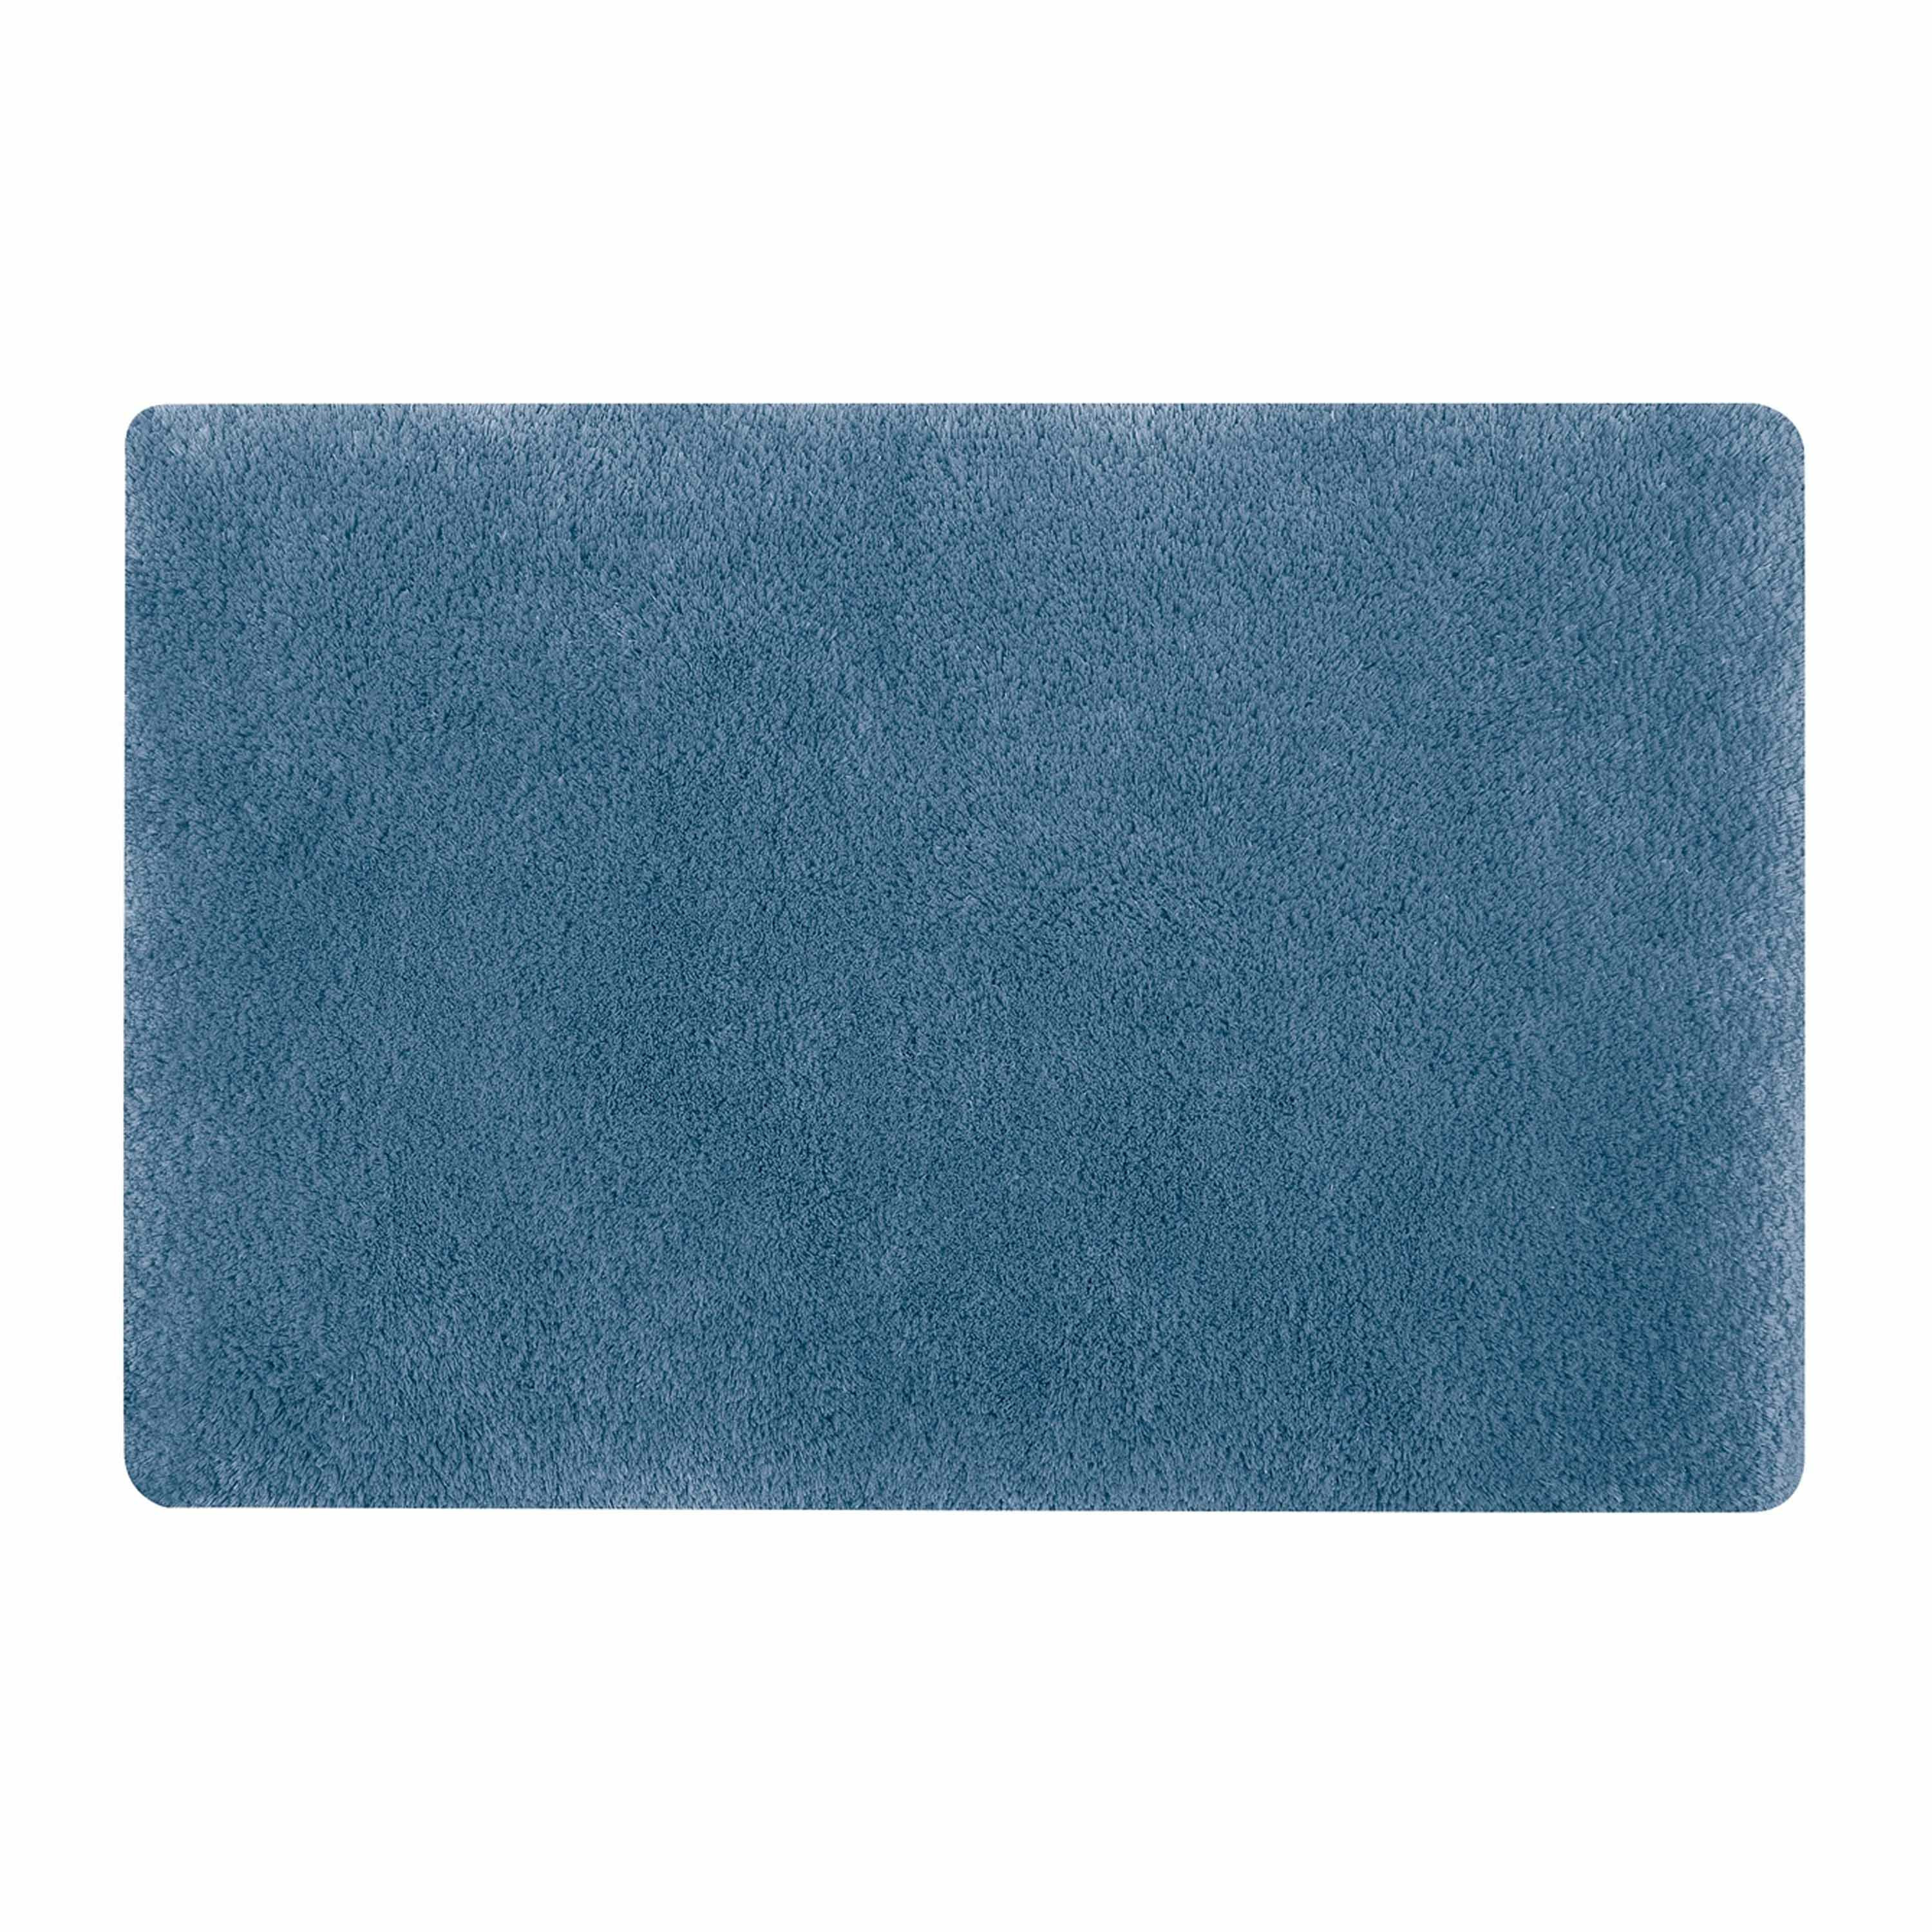 Spirella badkamer vloerkleed-tapijt hoogpolig blauw 50 x 80 cm